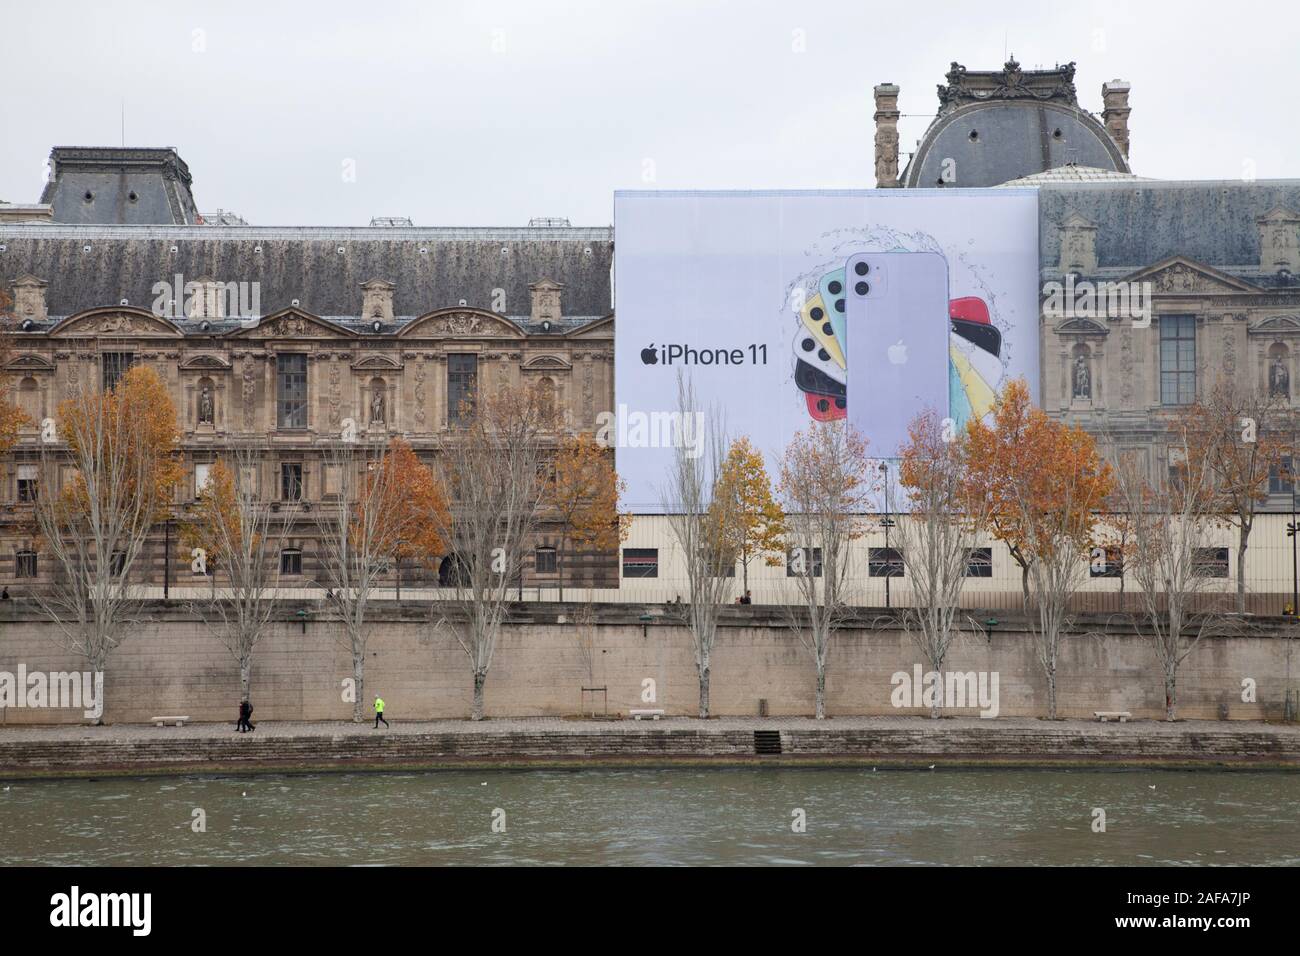 Une énorme publicité pour l'iPhone d'Apple 11 sur le Louvre galerie d'art sur les rives de la Seine à Paris Banque D'Images